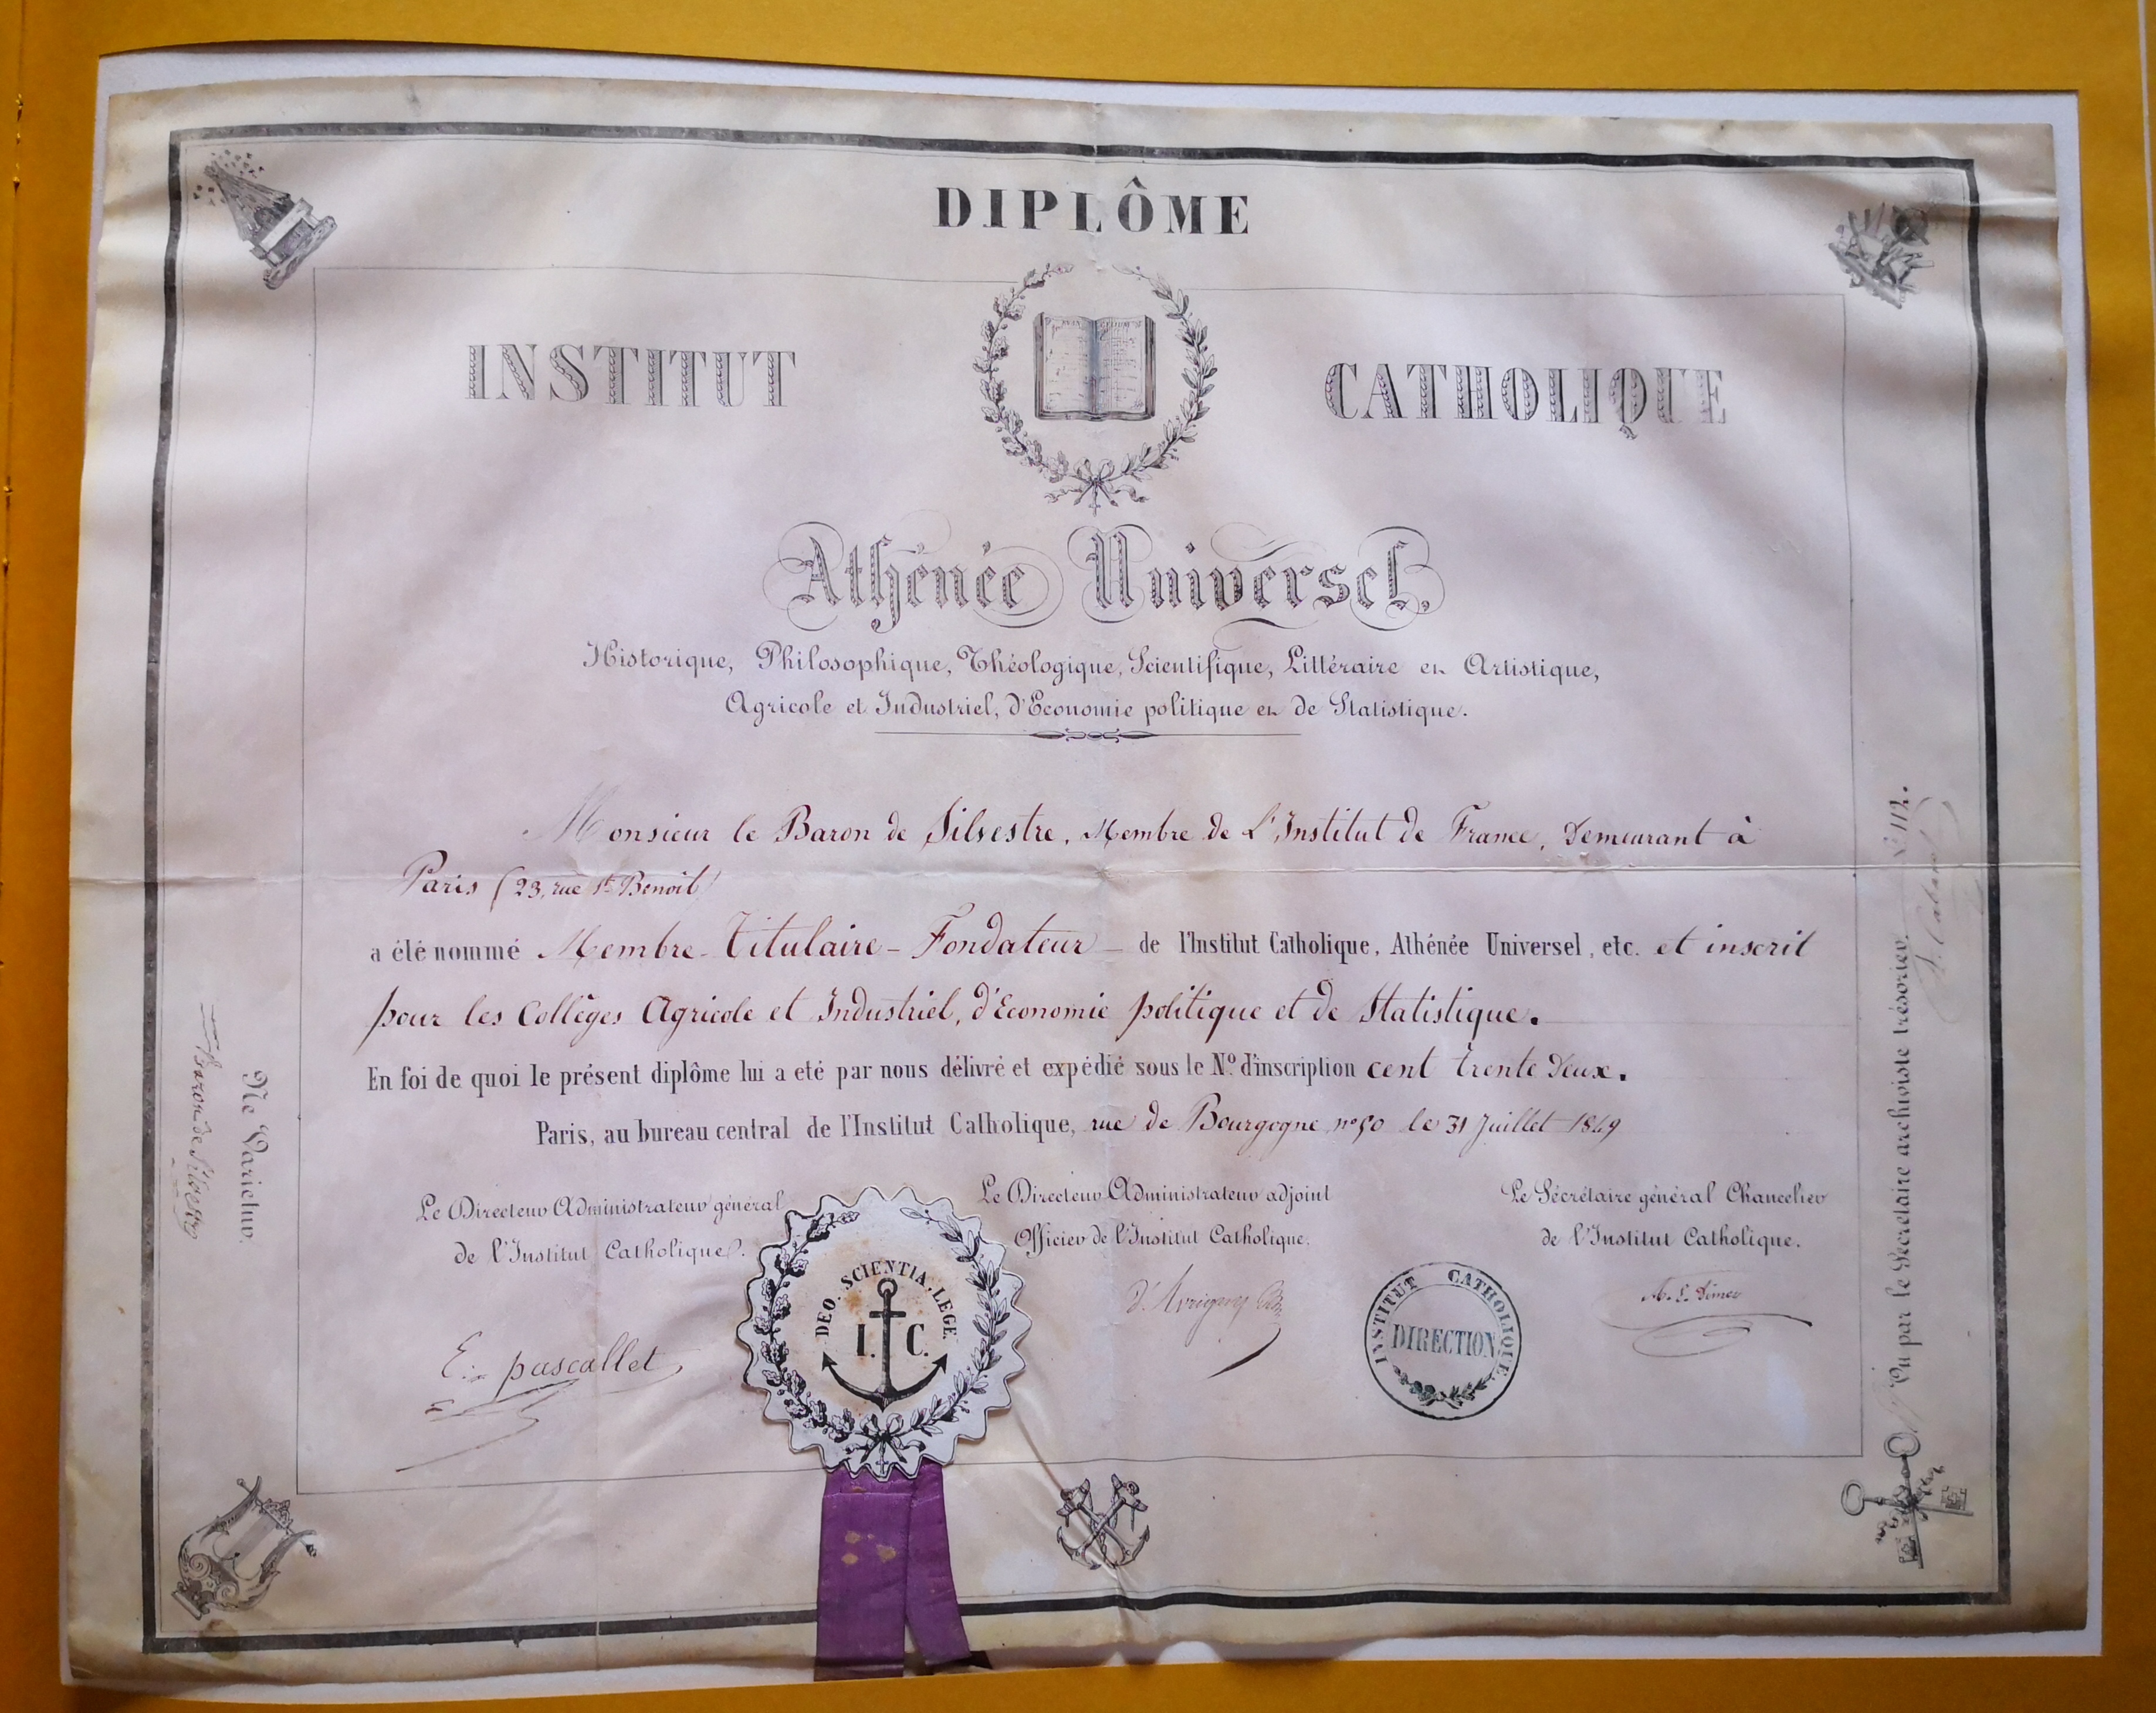  Diplôme de membre fondateur de l'Institut Catholique,  Athénée Universel  décerné à Augustin-François de Silvestre - Document 1